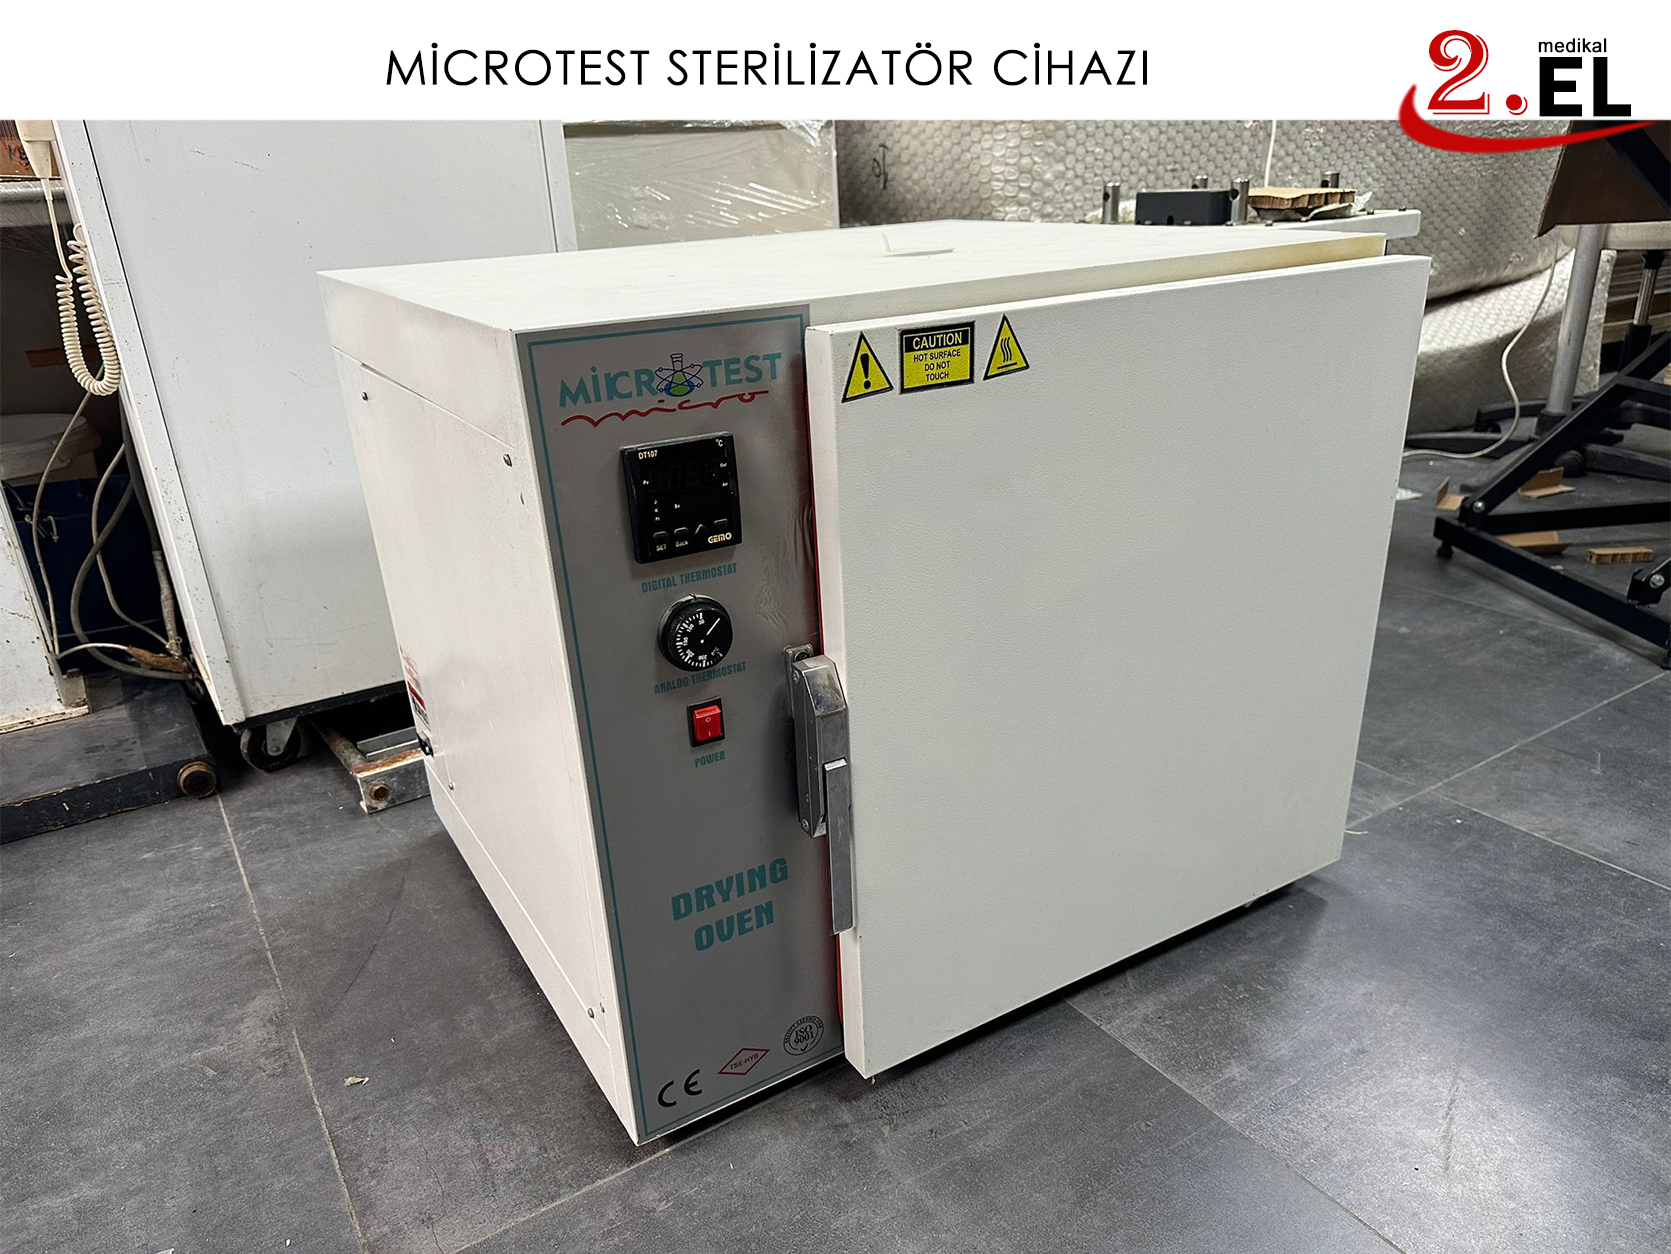 İkinci El Microtest Sterilizatör Cihazı